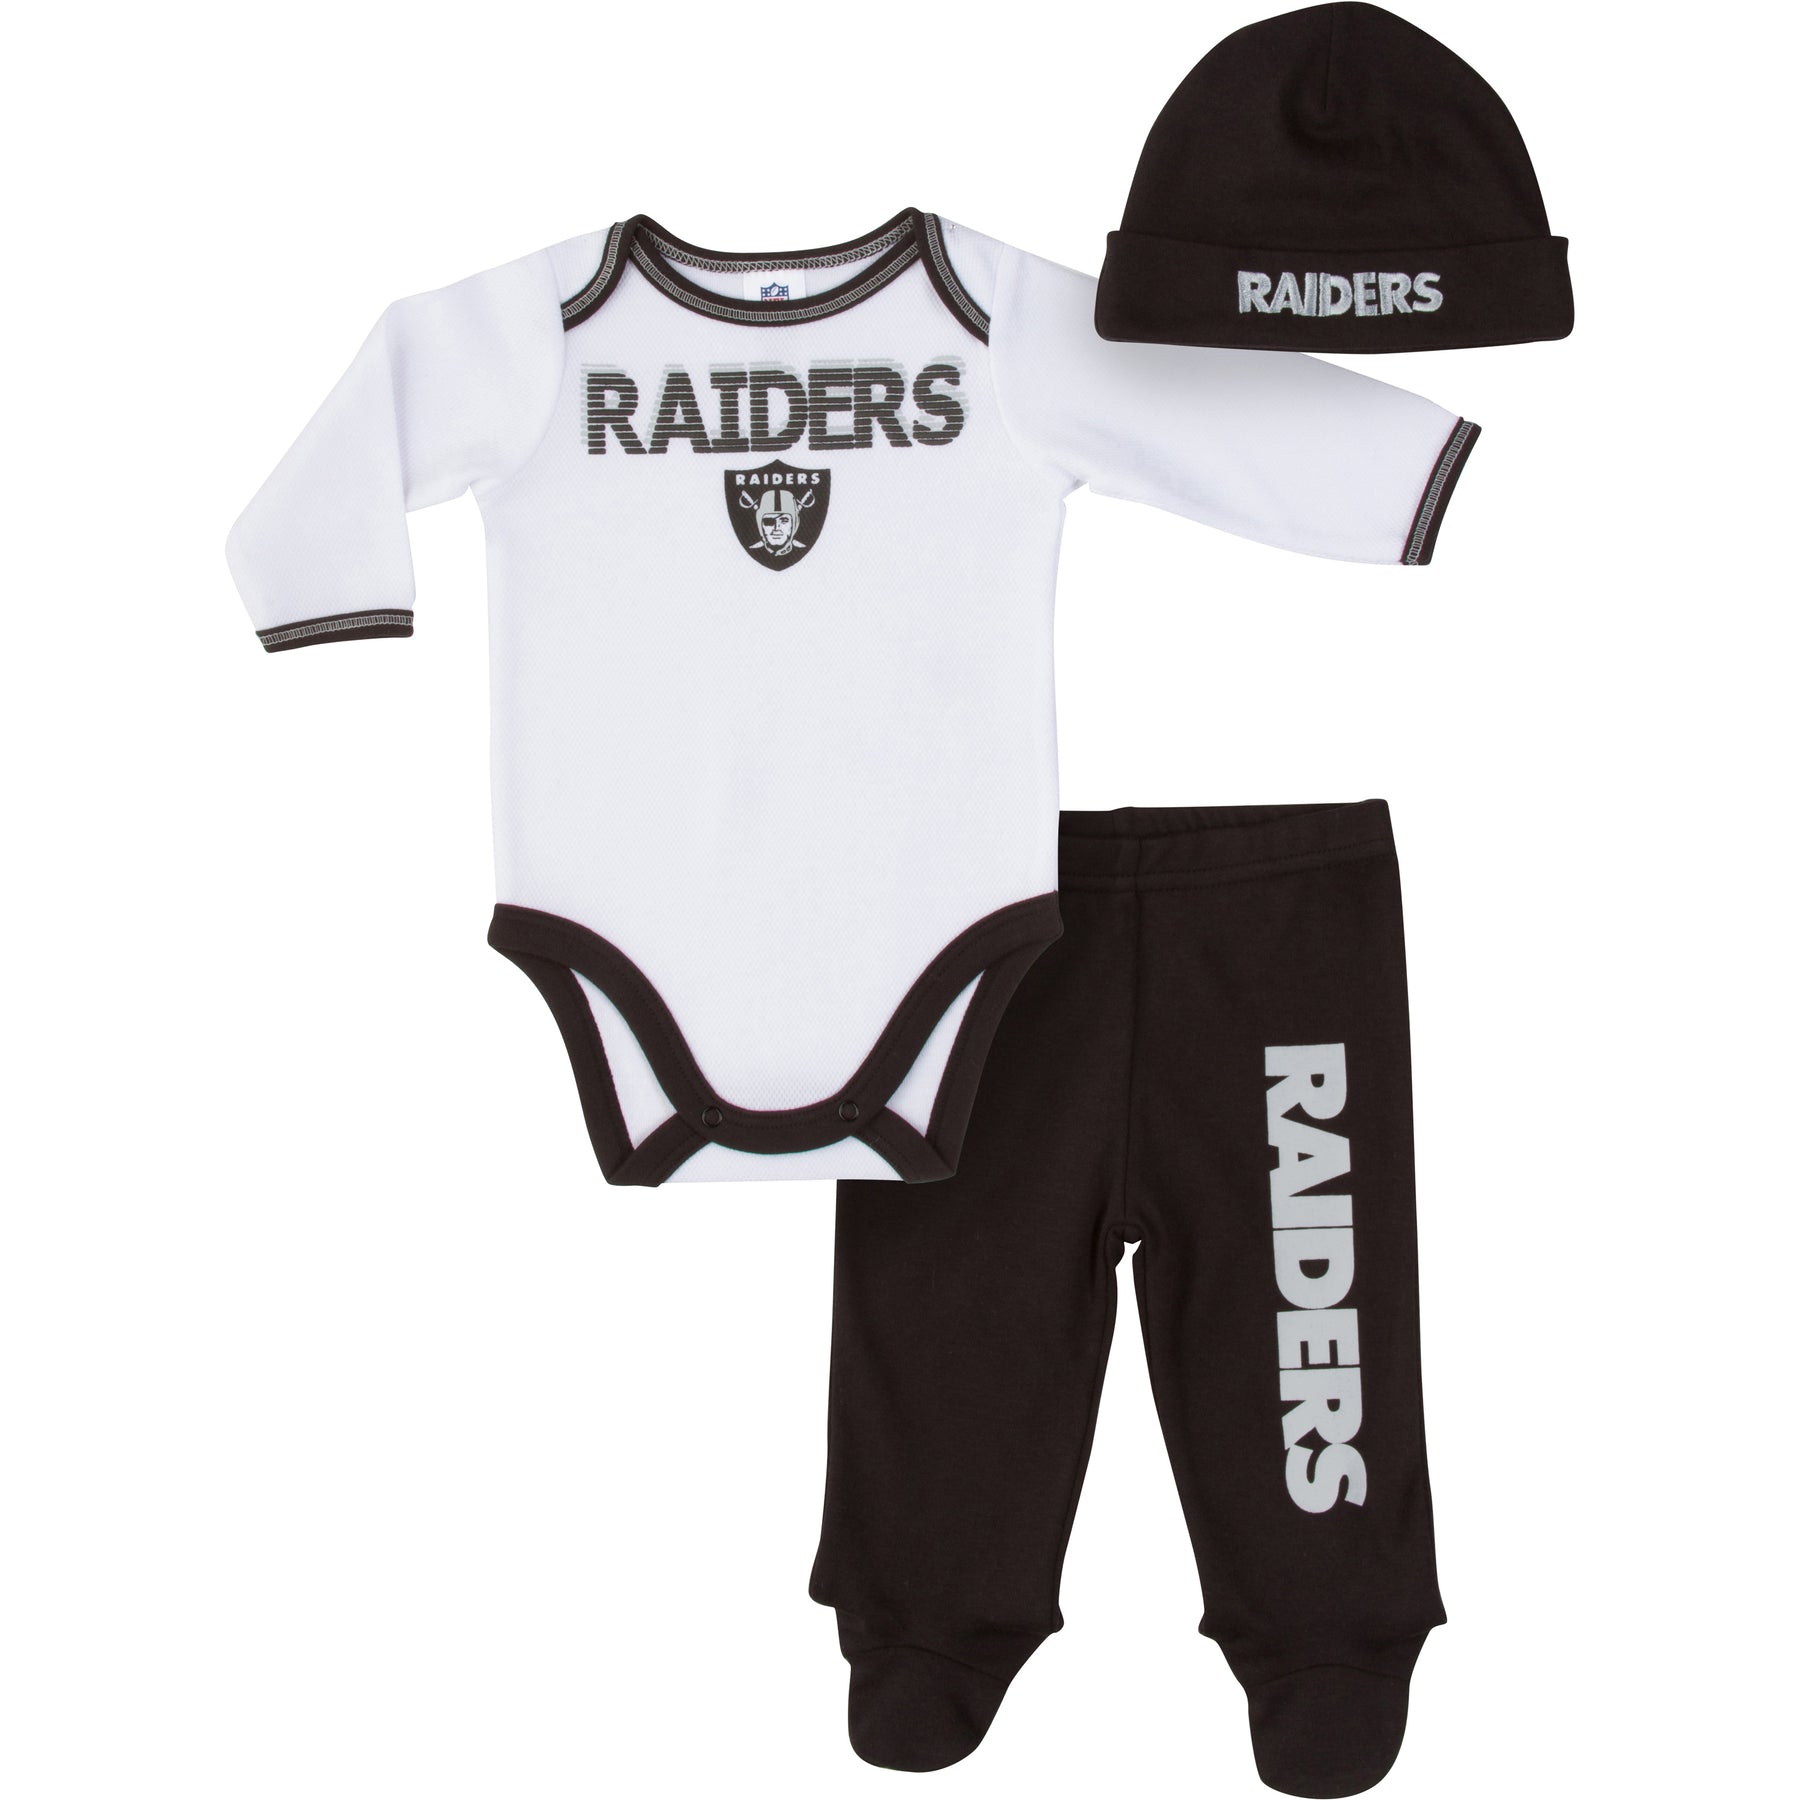 raiders baby stuff